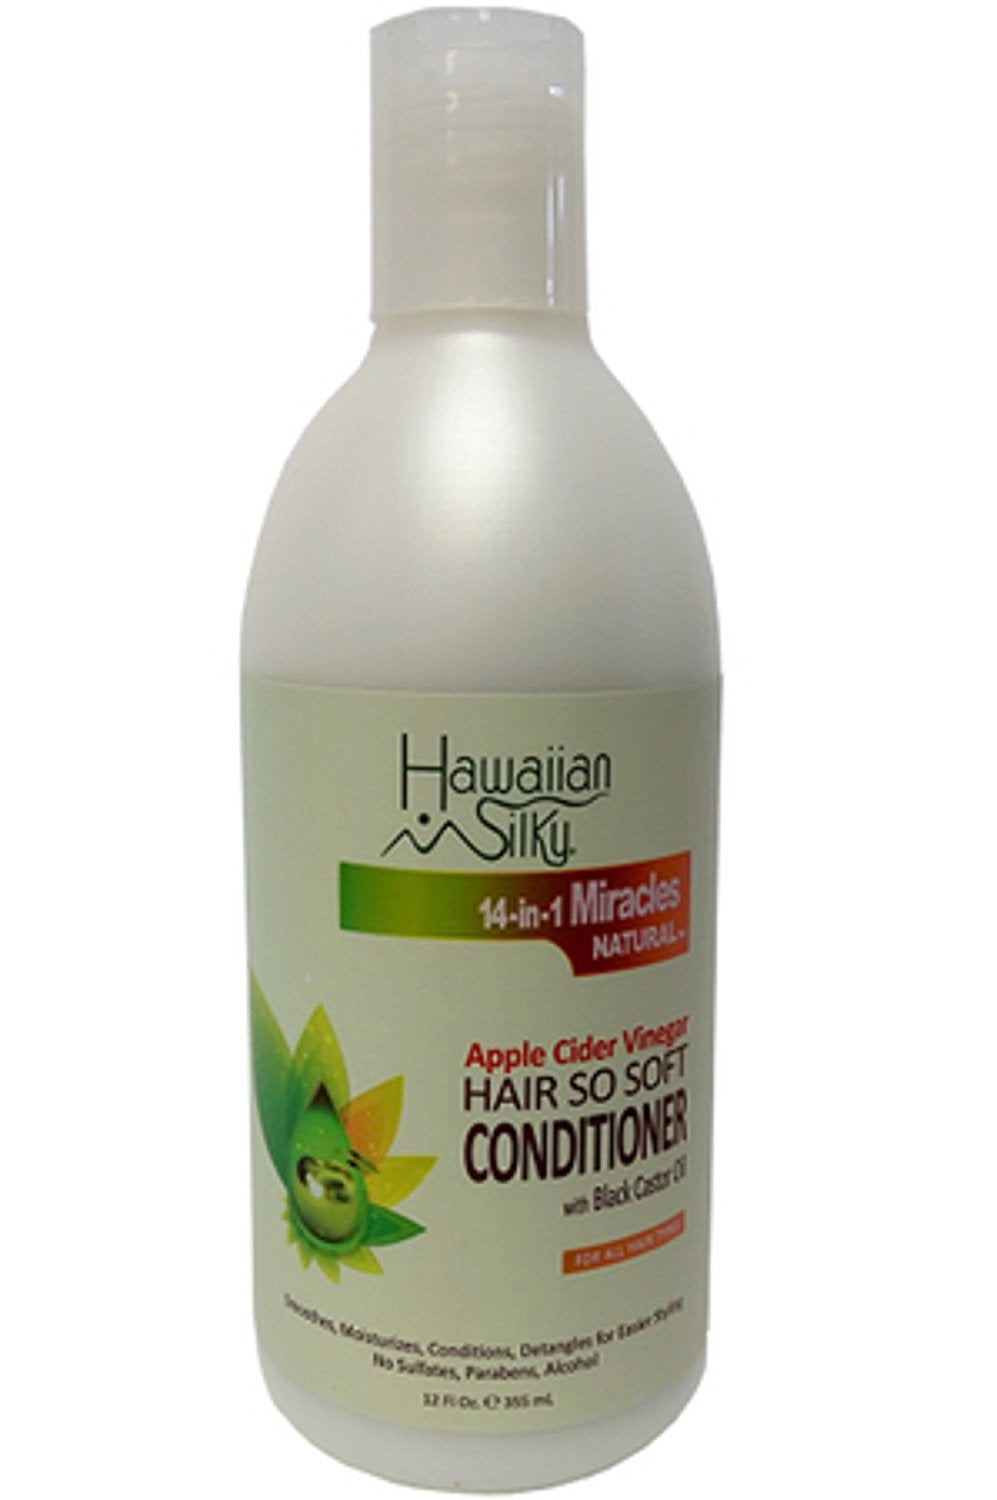 Hawaiian Silky Apple Cider Vinegar Hair So Soft Conditioner 12 oz